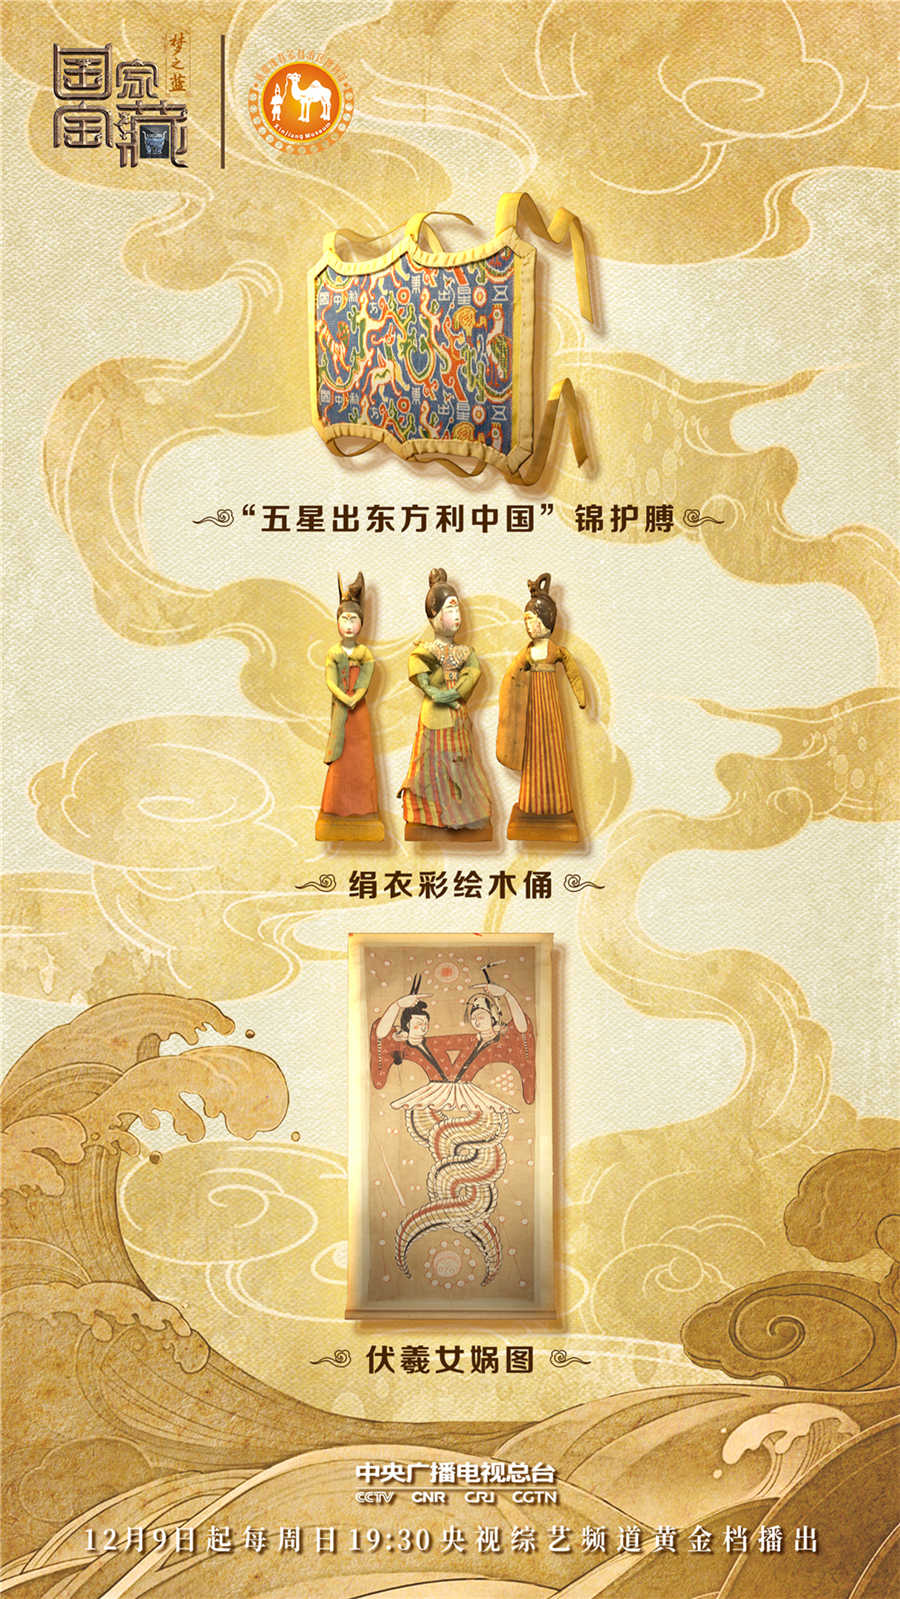 图：“五星出东方利中国”锦护膊、绢衣彩绘木俑、伏羲女娲图。